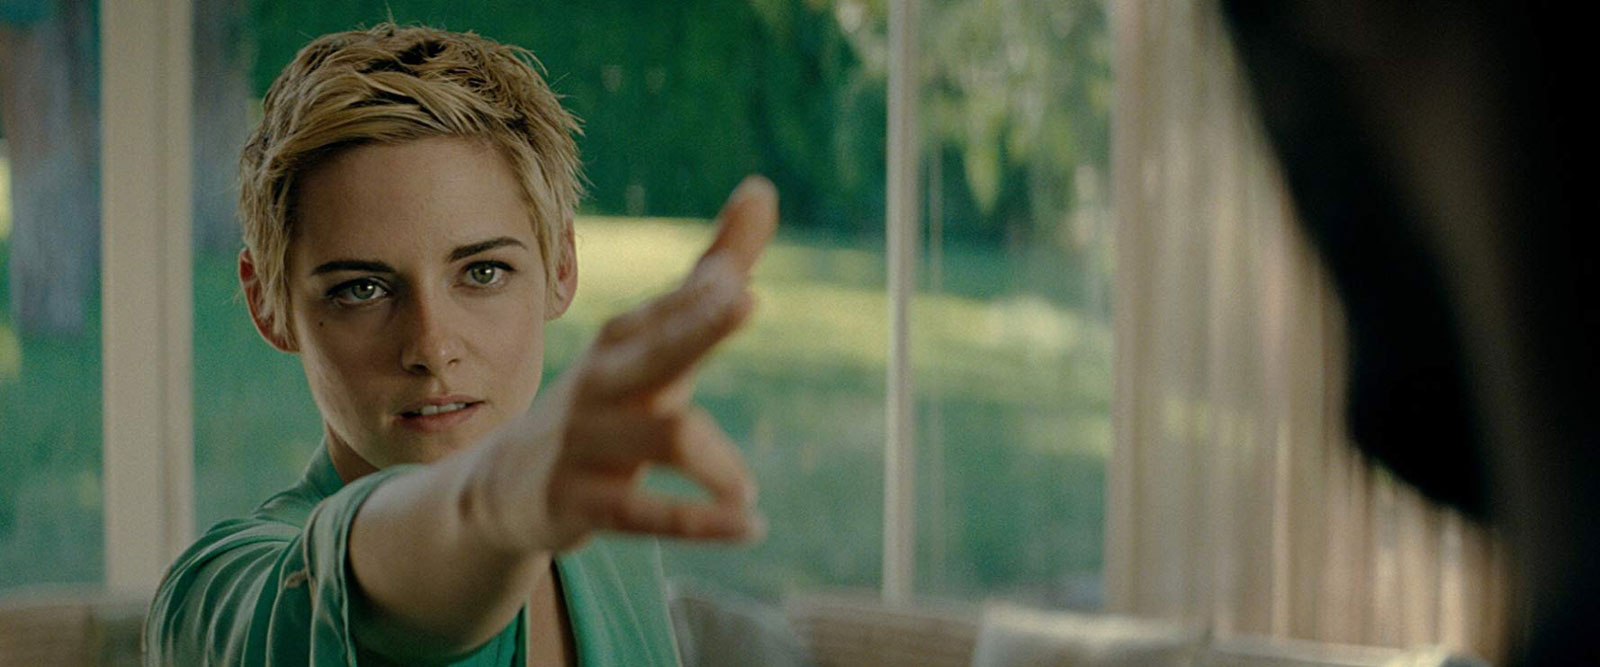 Deauville 2019 : double biopic pour Kristen Stewart avec Seberg et JT Leroy